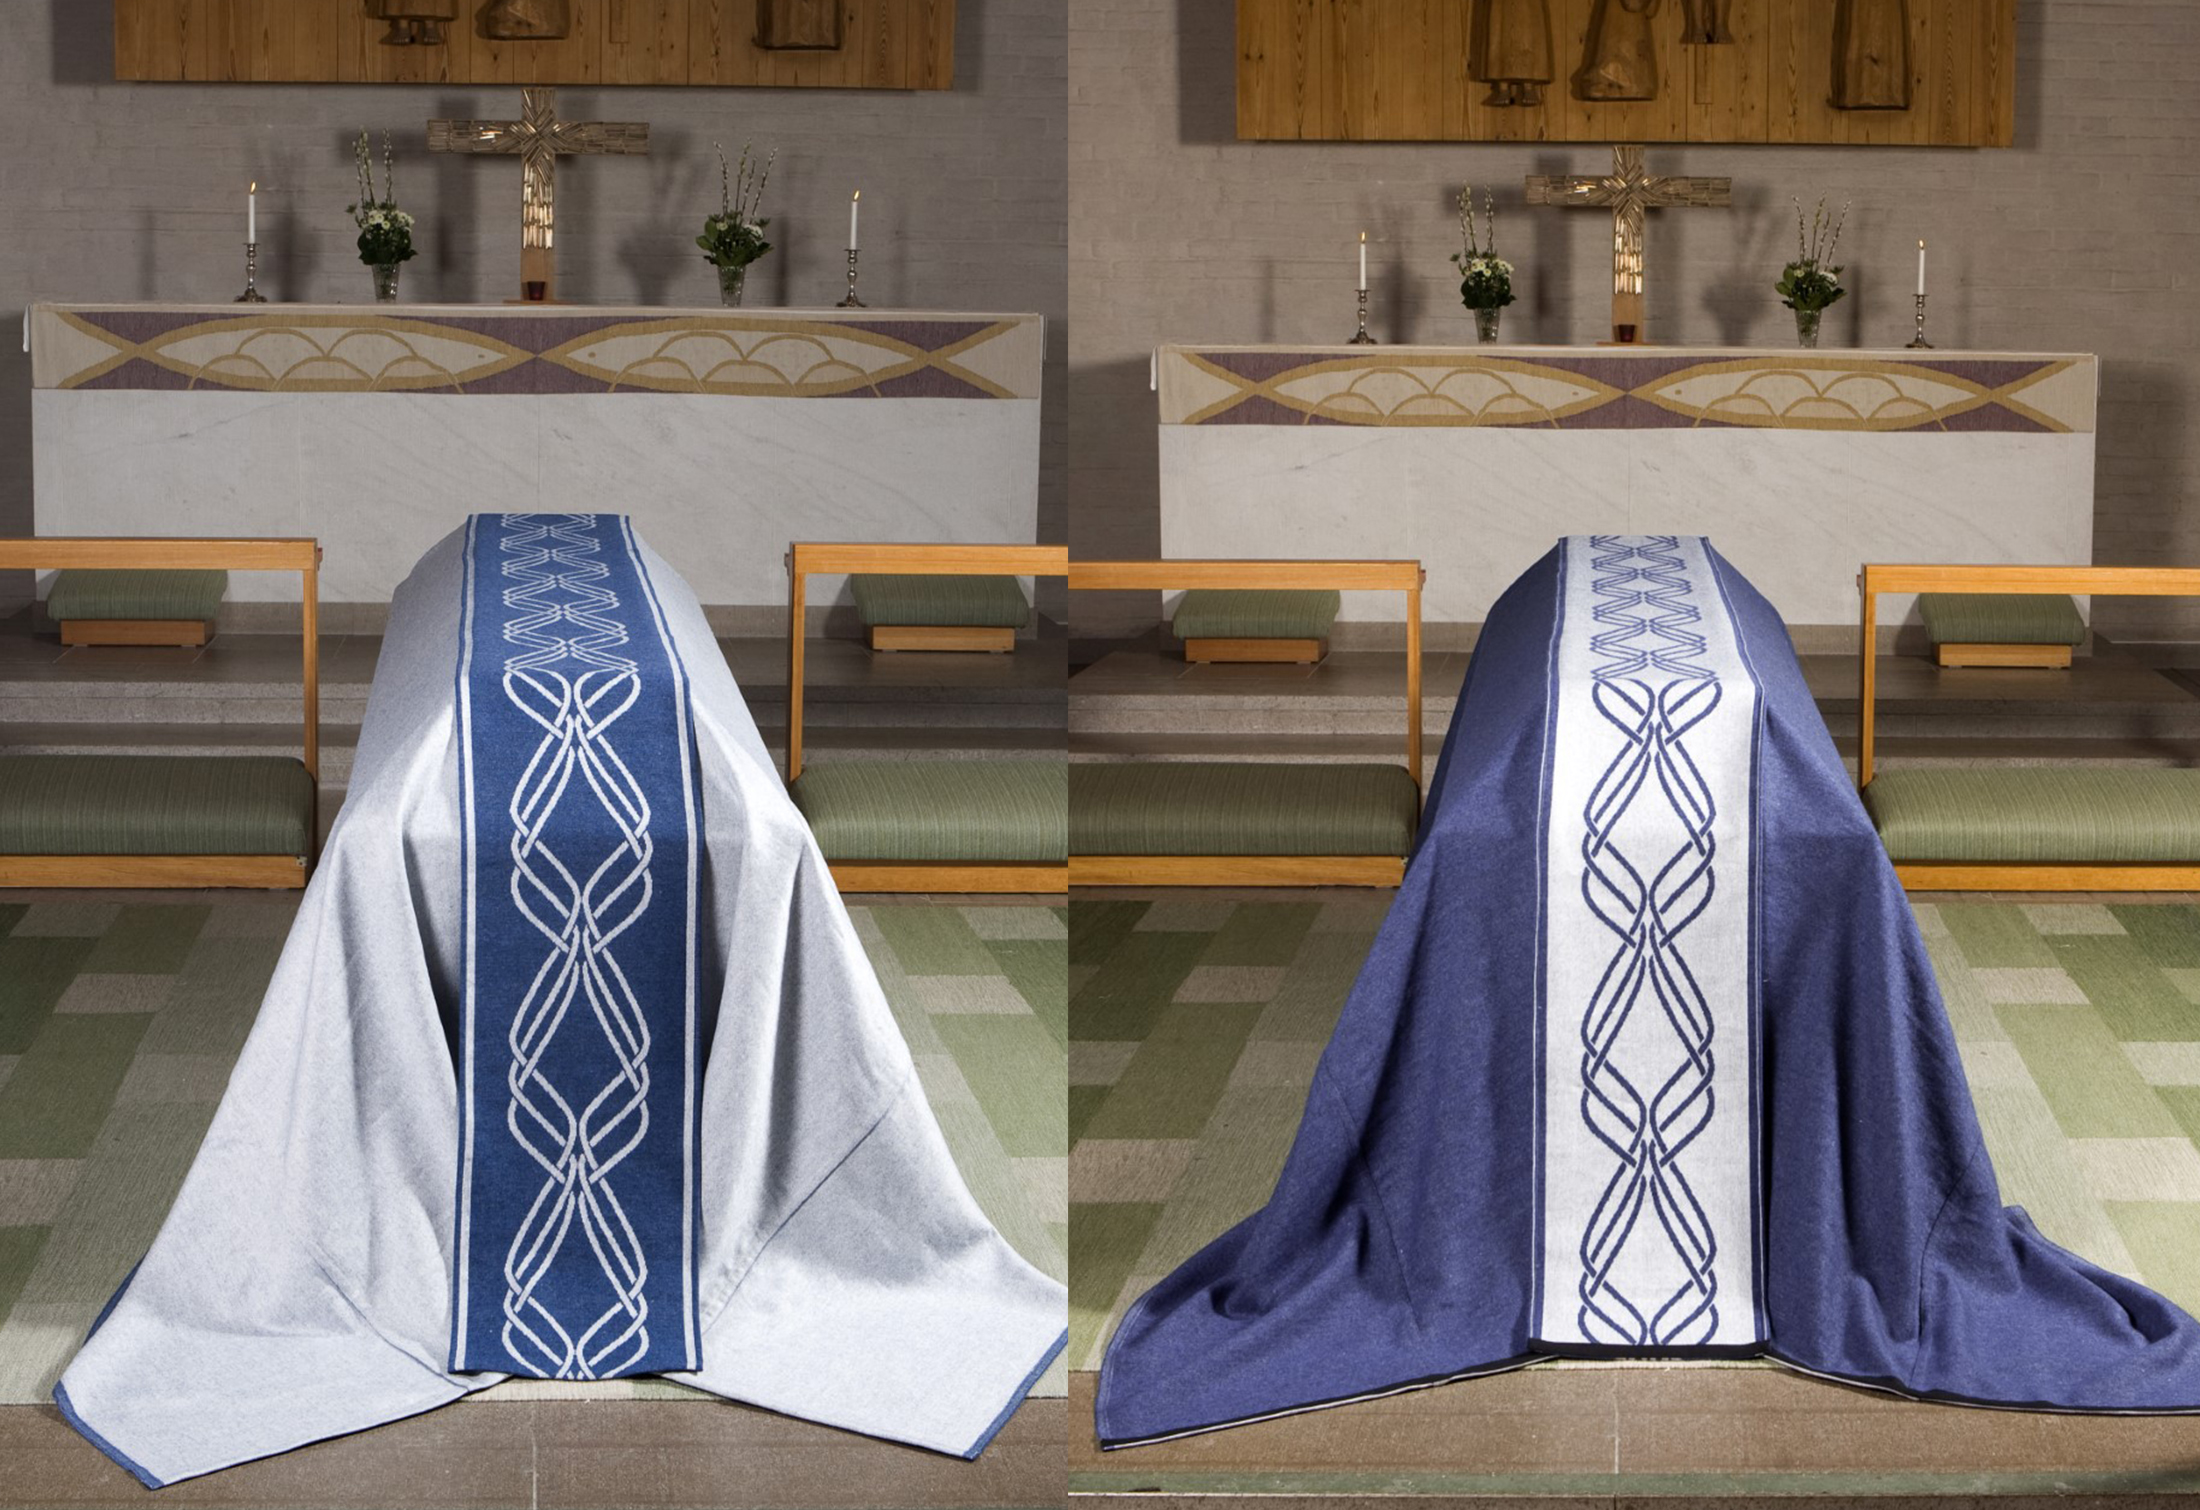 Båtäcken-klässbols-lineväveri. Två stycken på två olika kistor framför altaret i färgen blå.